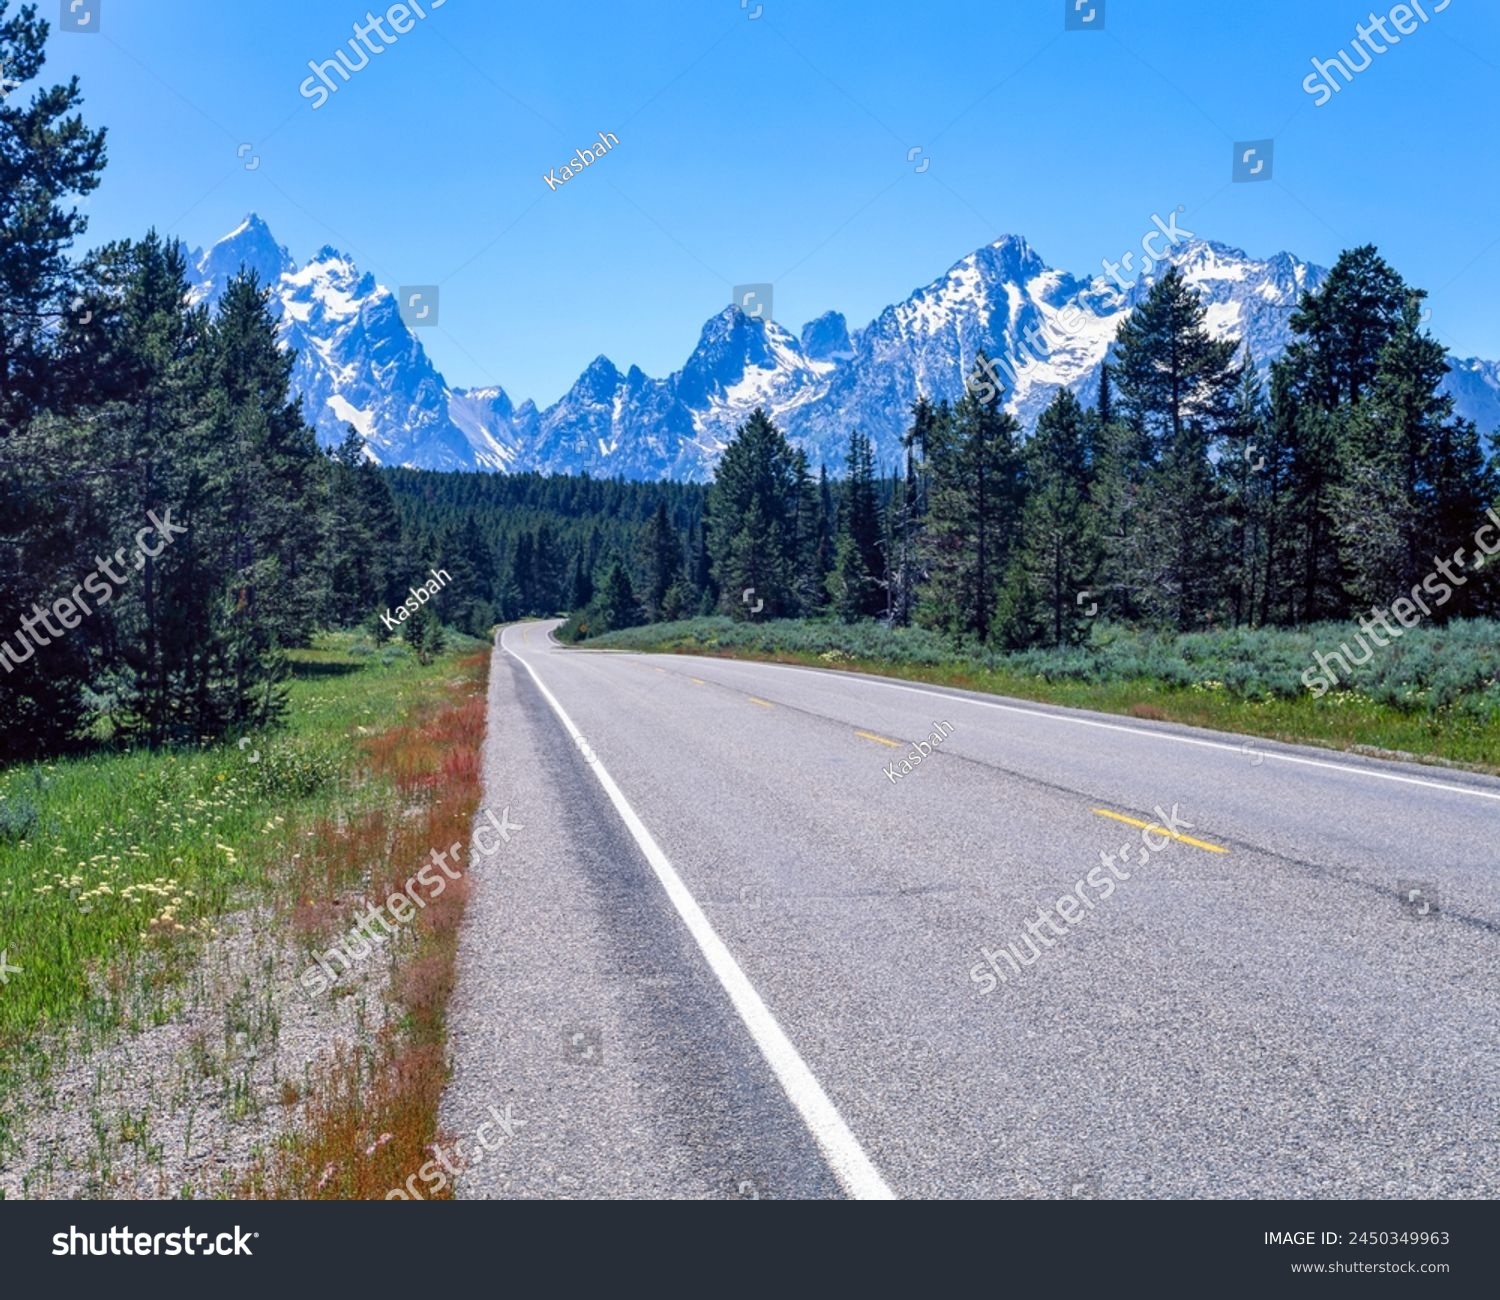 Teton Park Road and Teton Range, Grand Teton National Park : Teton County, WY, USA #2450349963